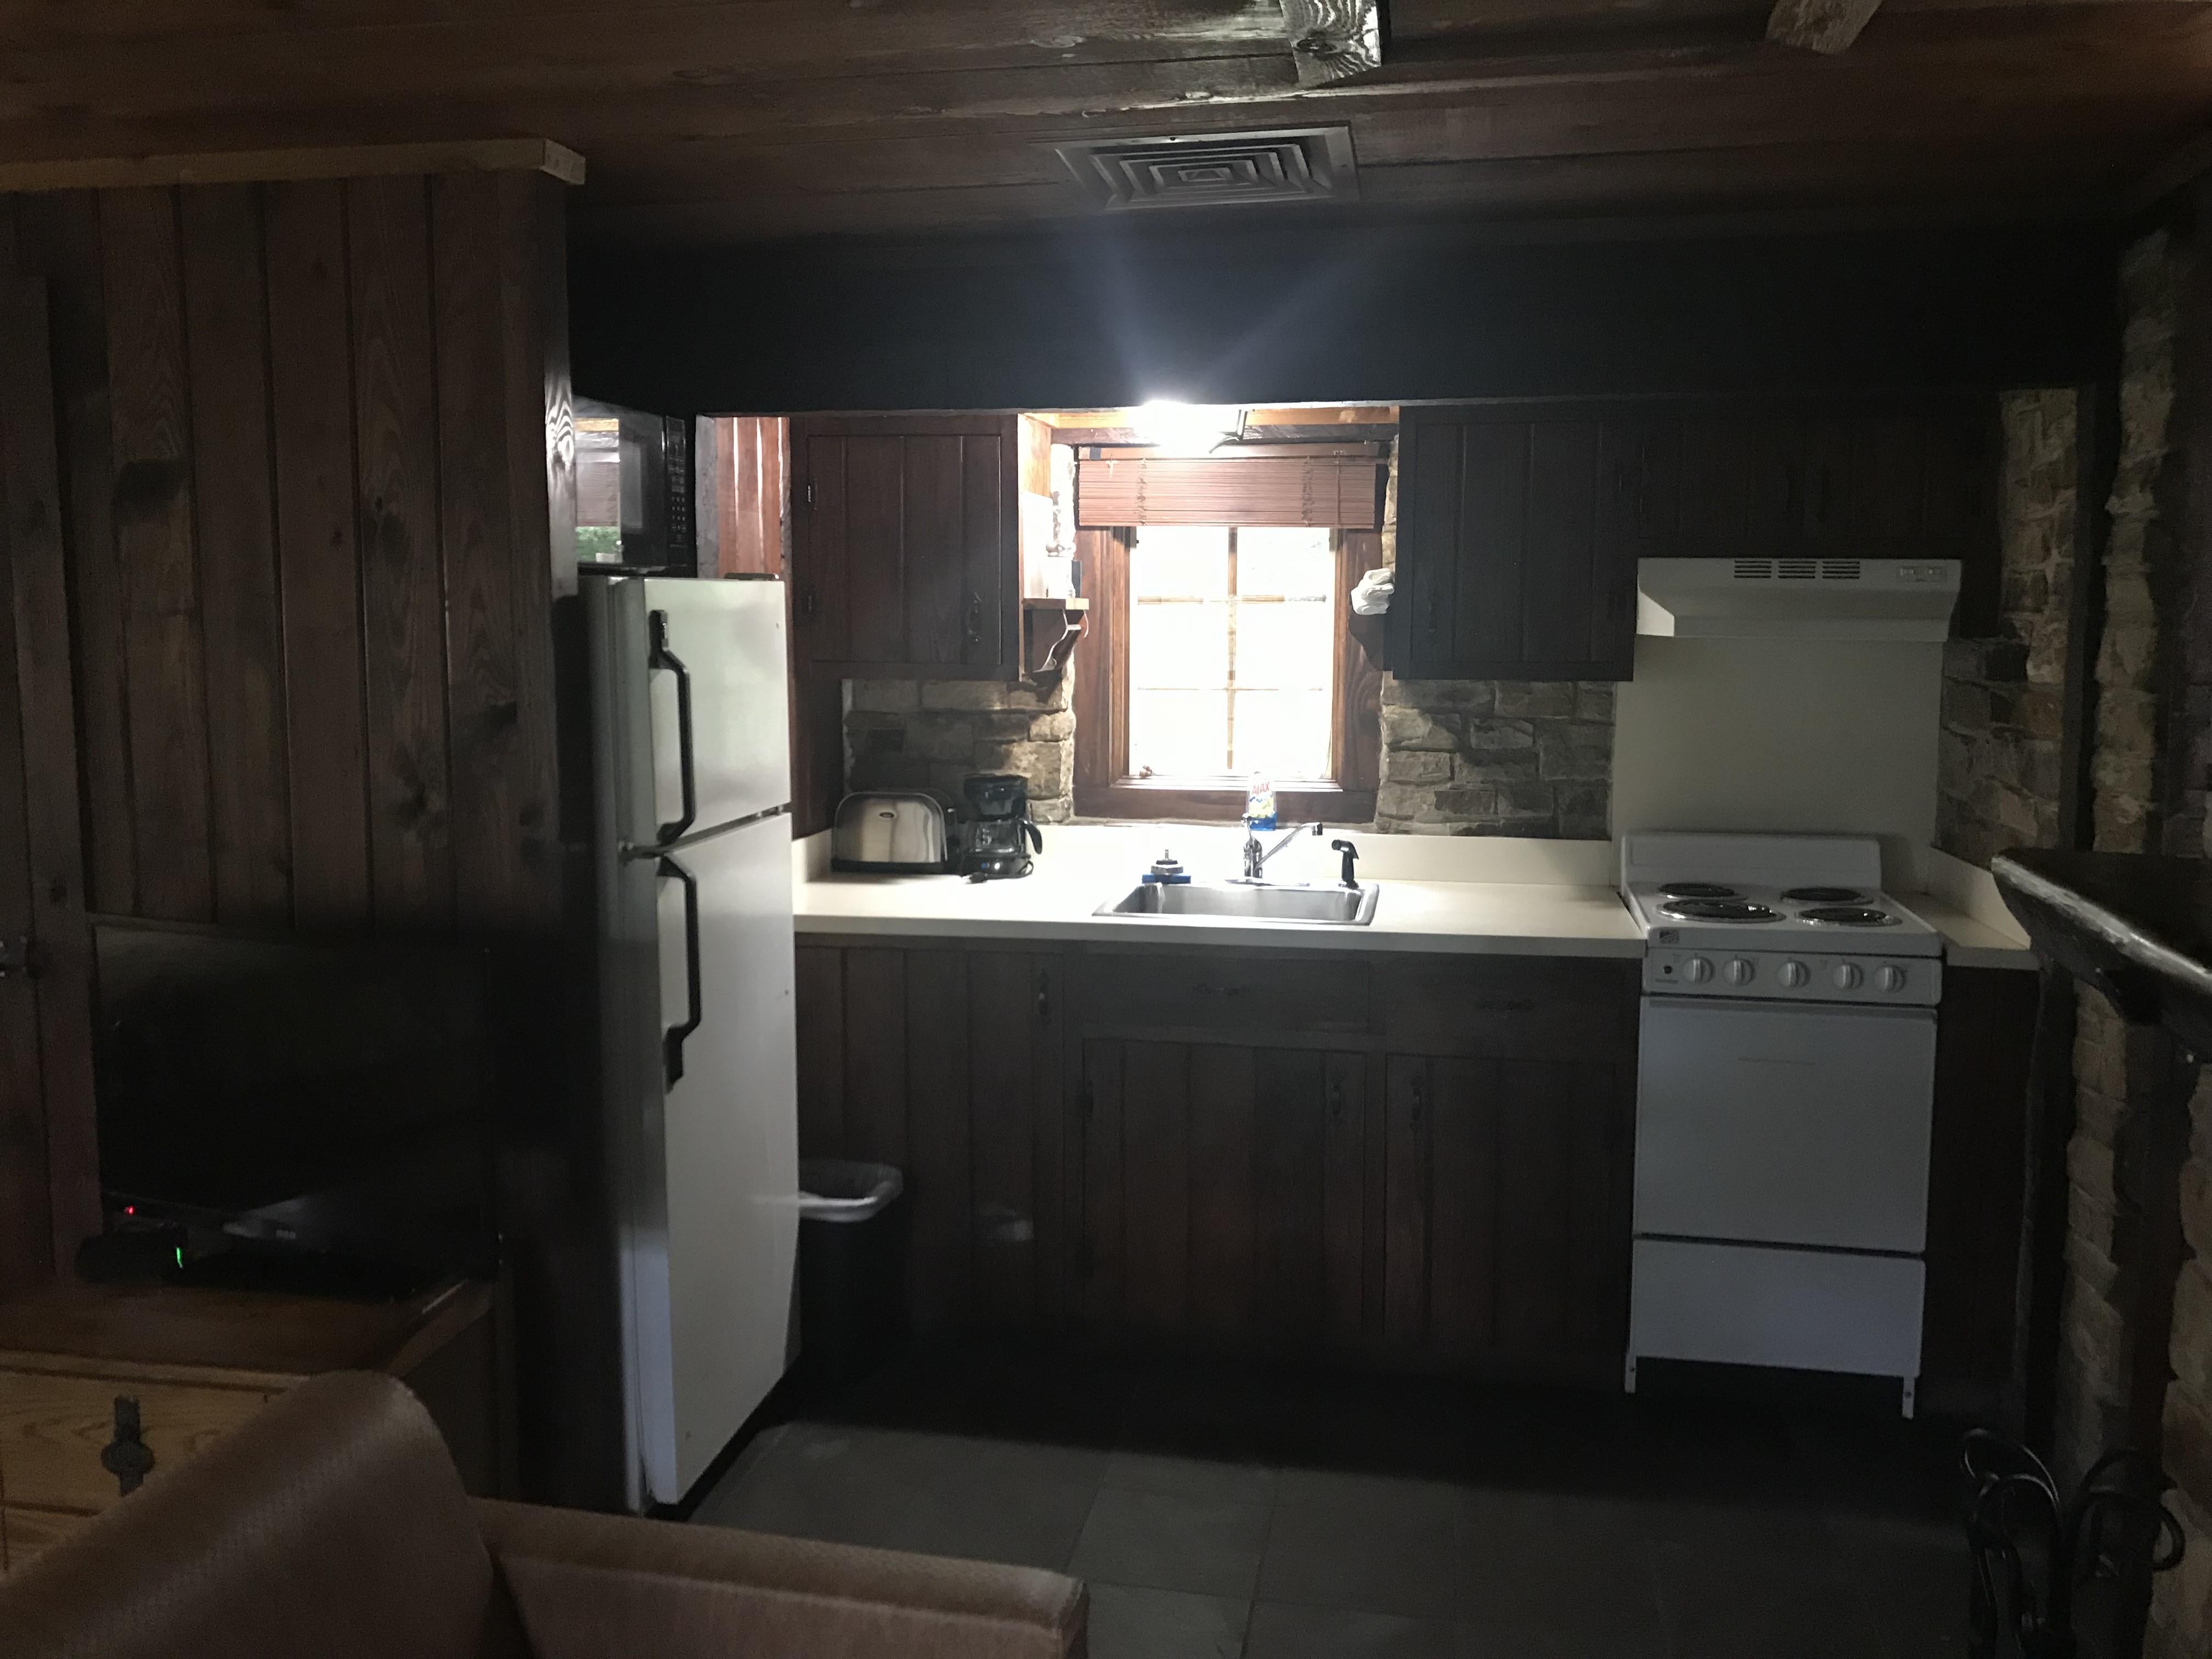 Cabin 6 Kitchen